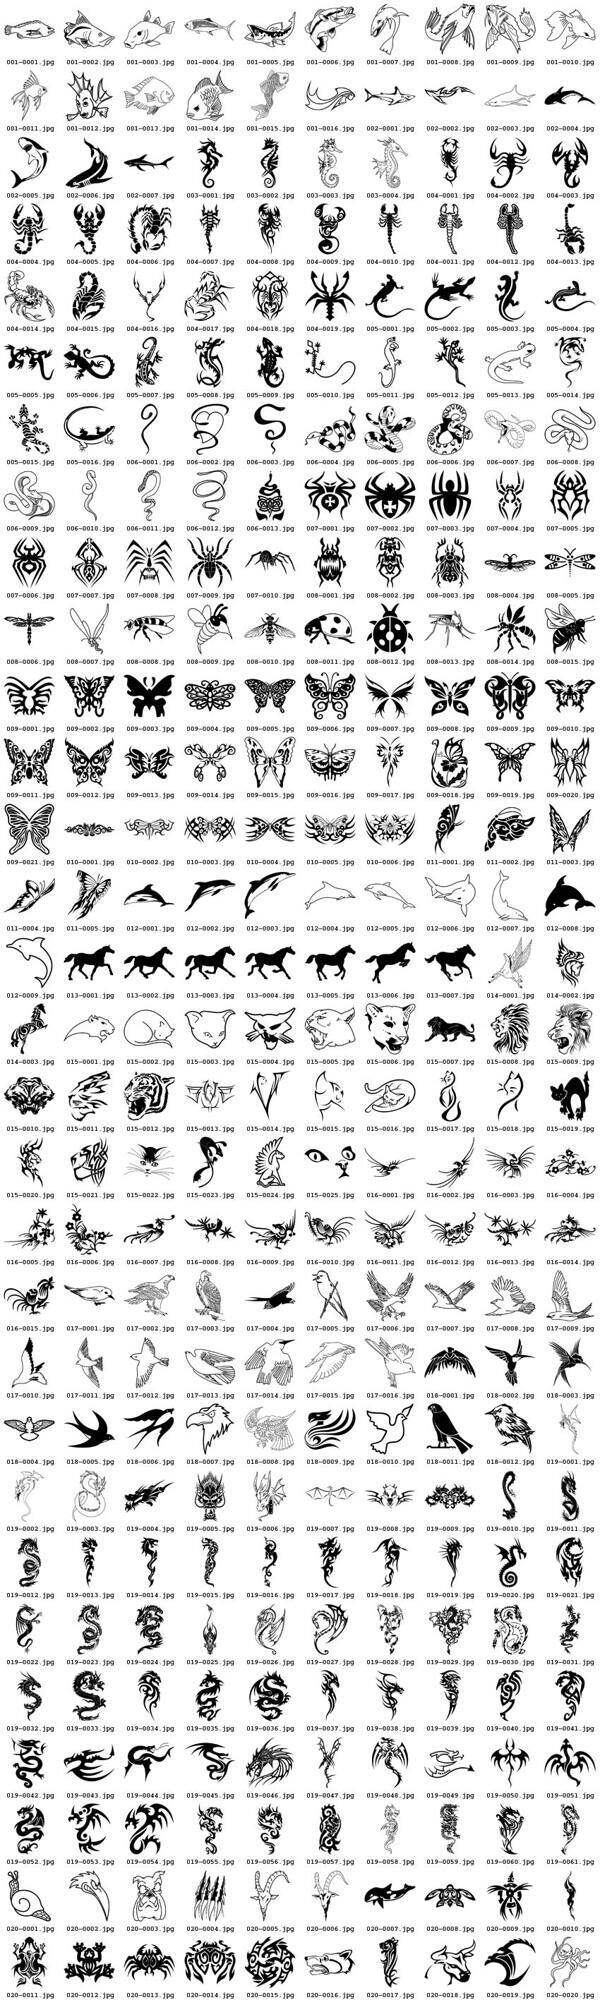 300种型号的各种各样的动物图腾矢量素材